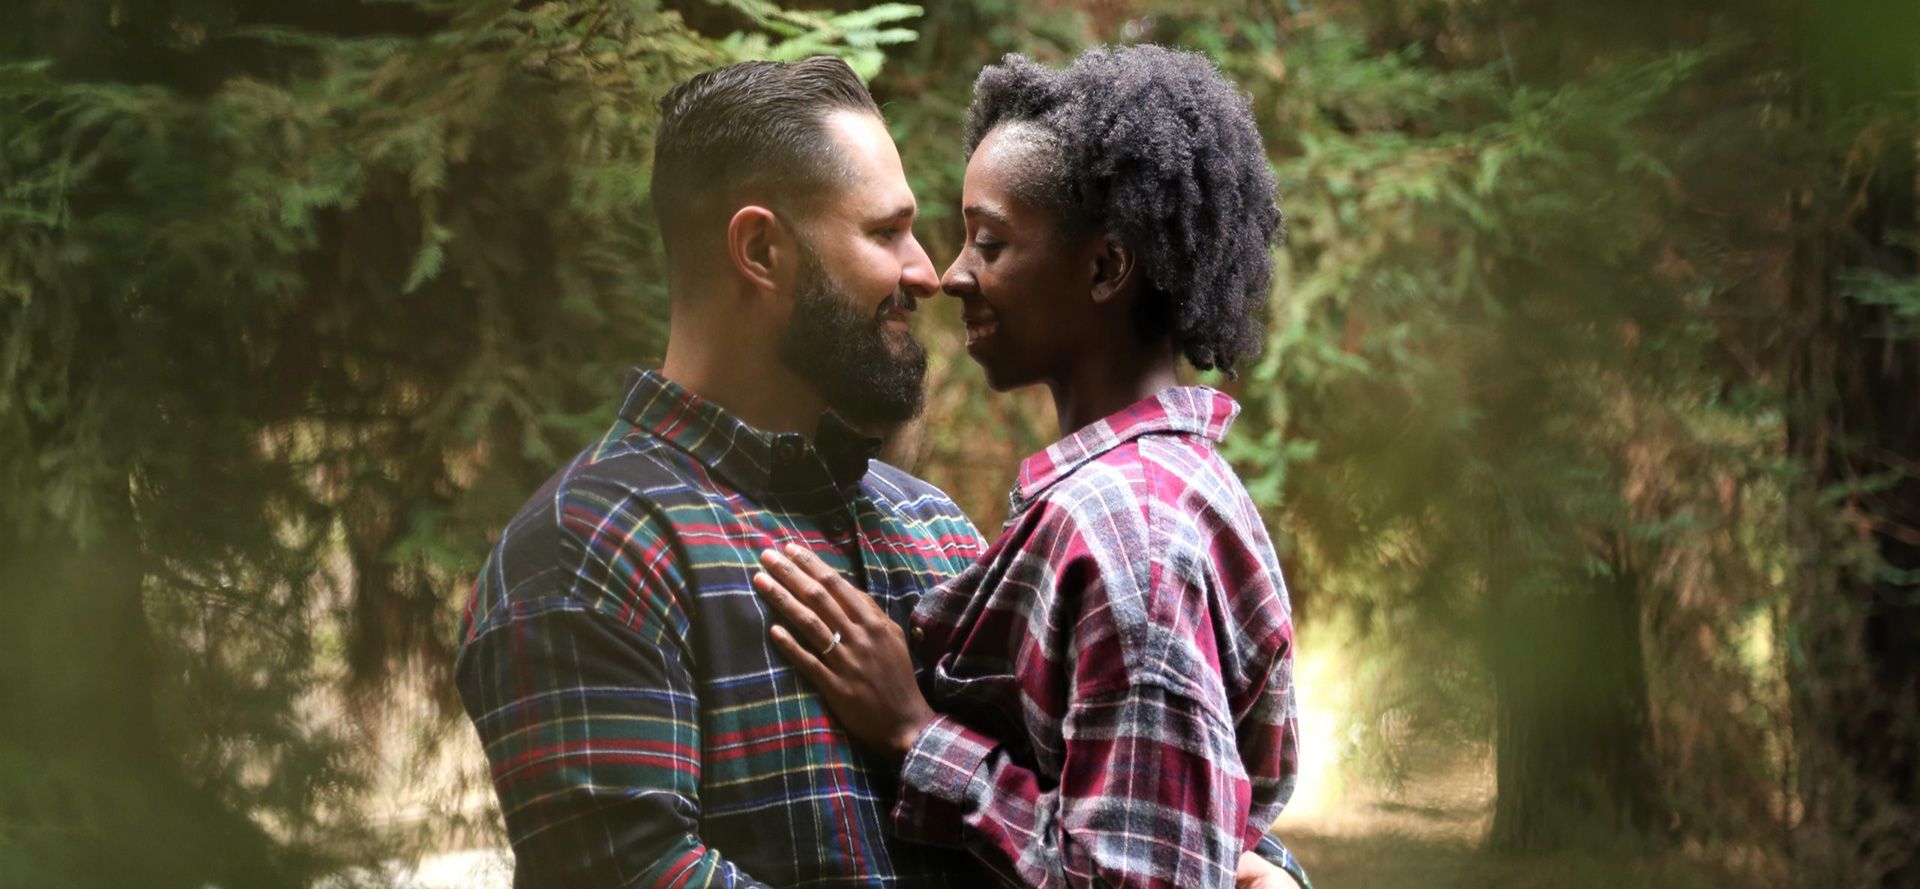 Blanke man en zwarte vrouw op een date in het bos.